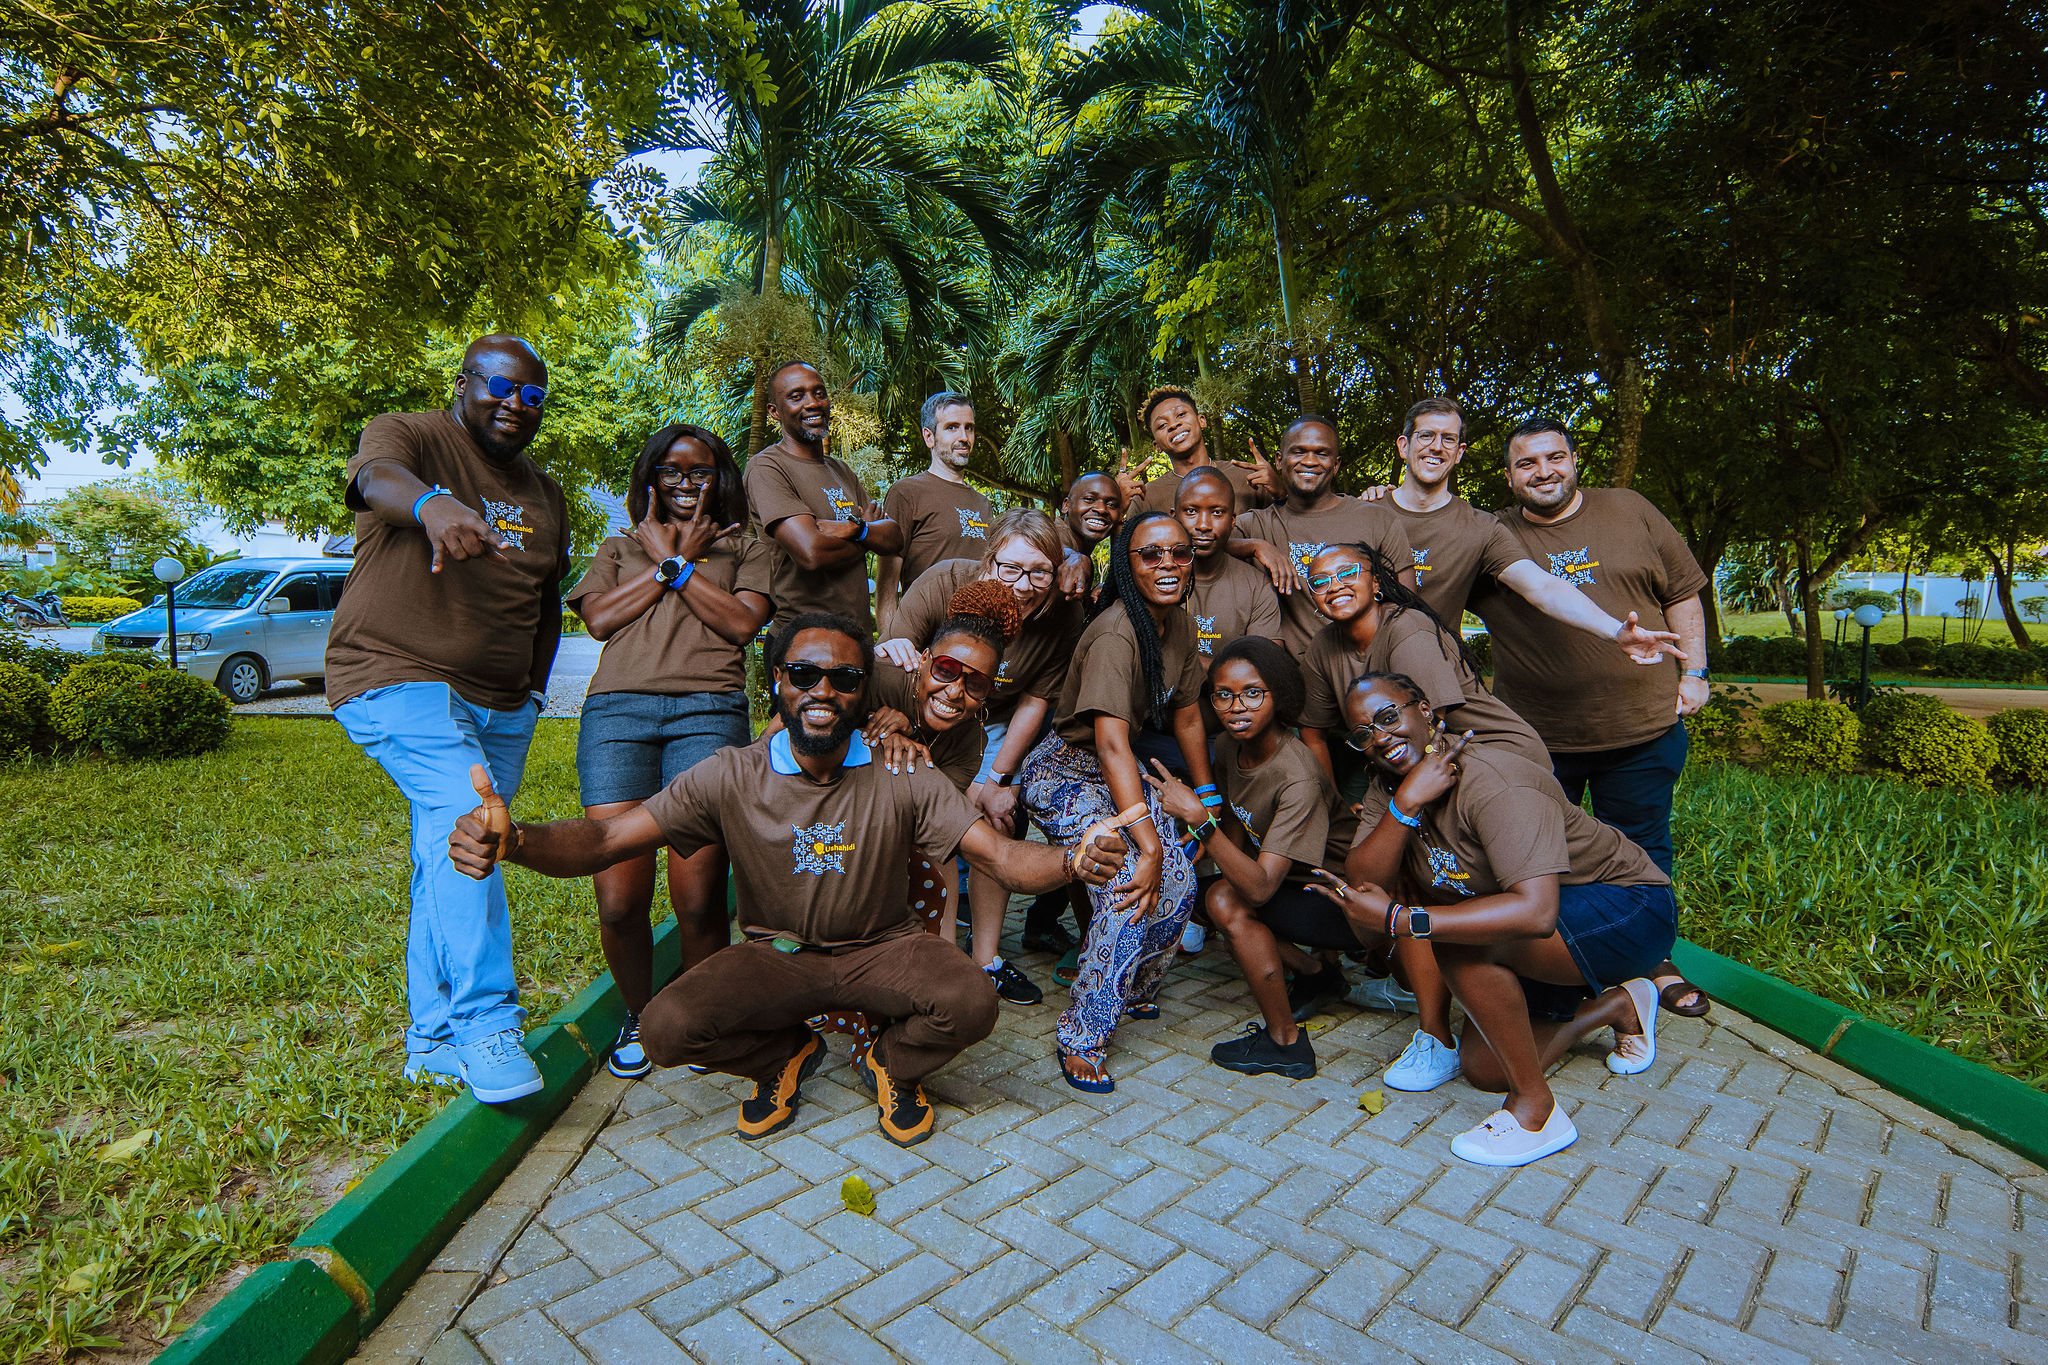 The Ushahidi team